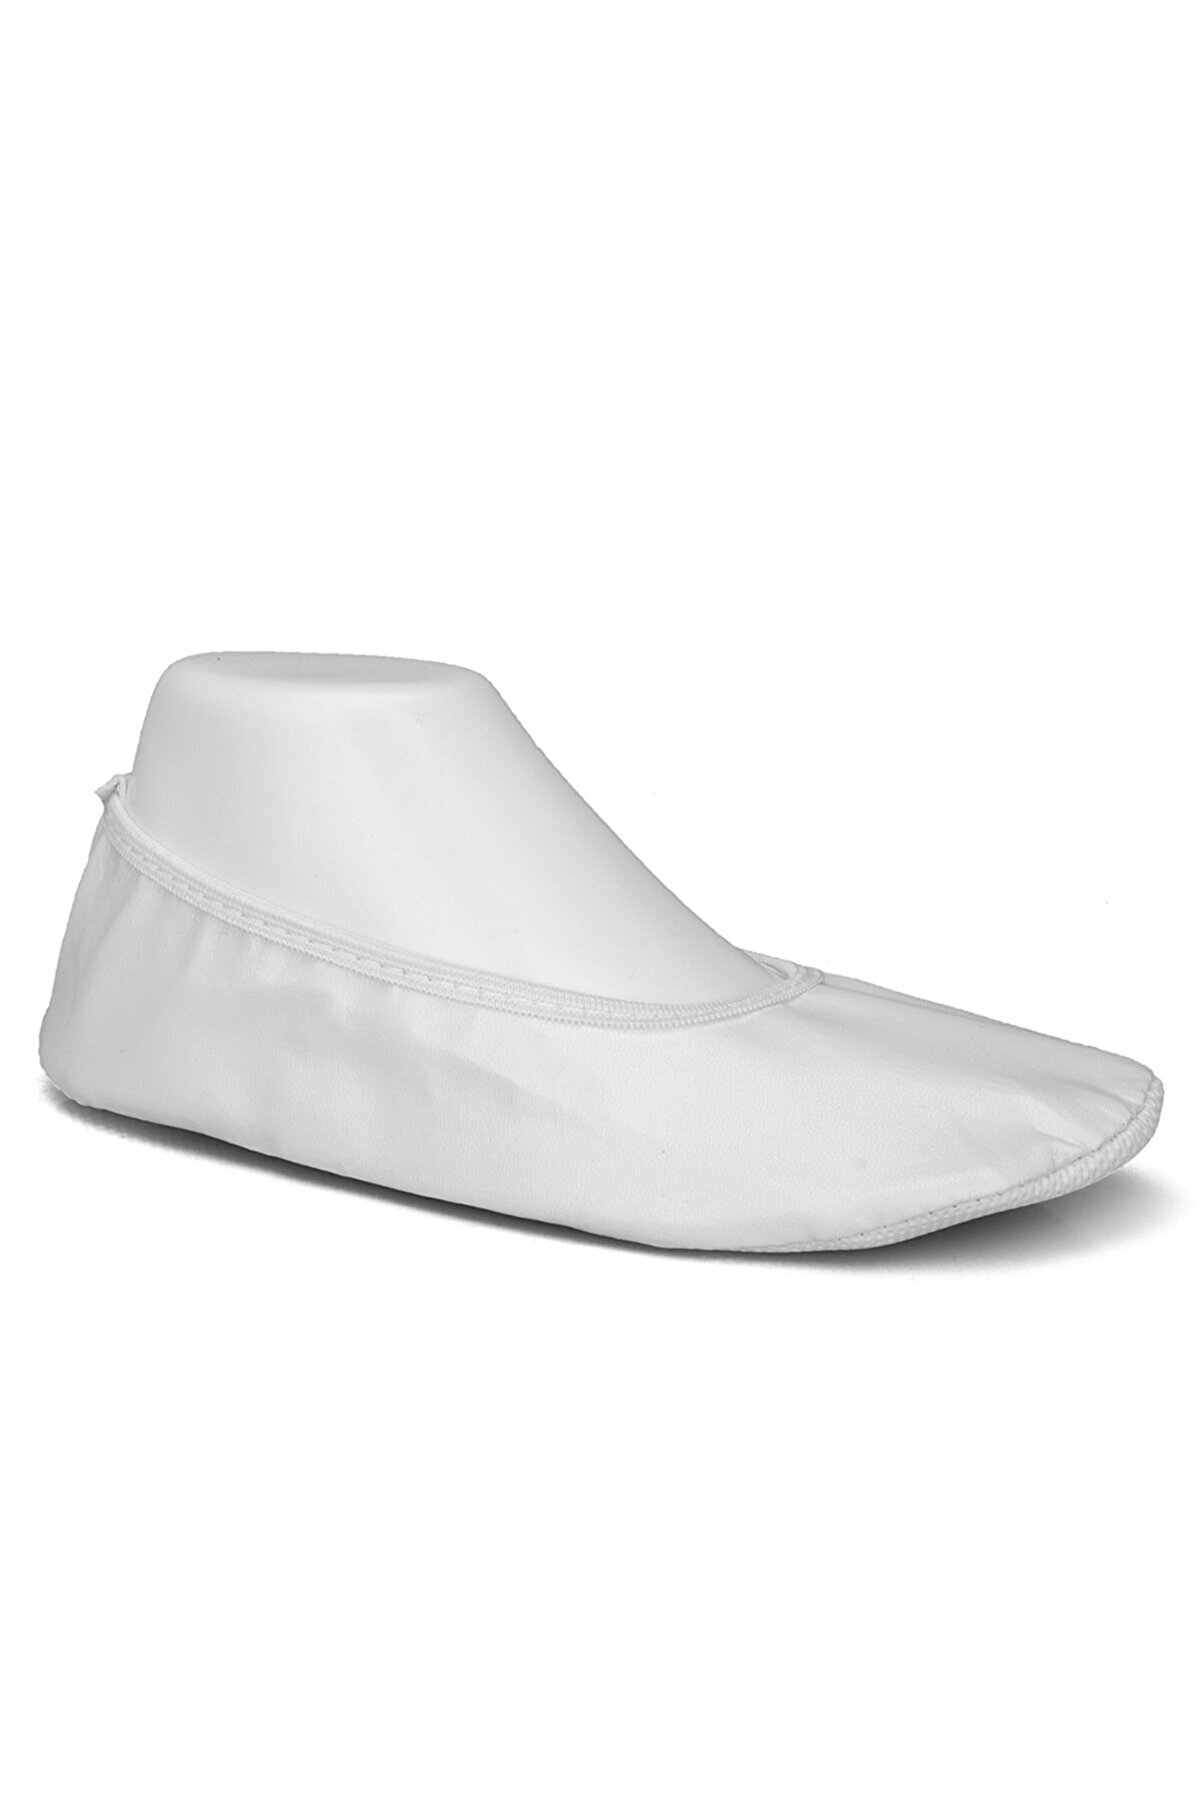 Pisipisi Beyaz Gösteri Ayakkabısı Pisi Pisi Babet Ayakkabı